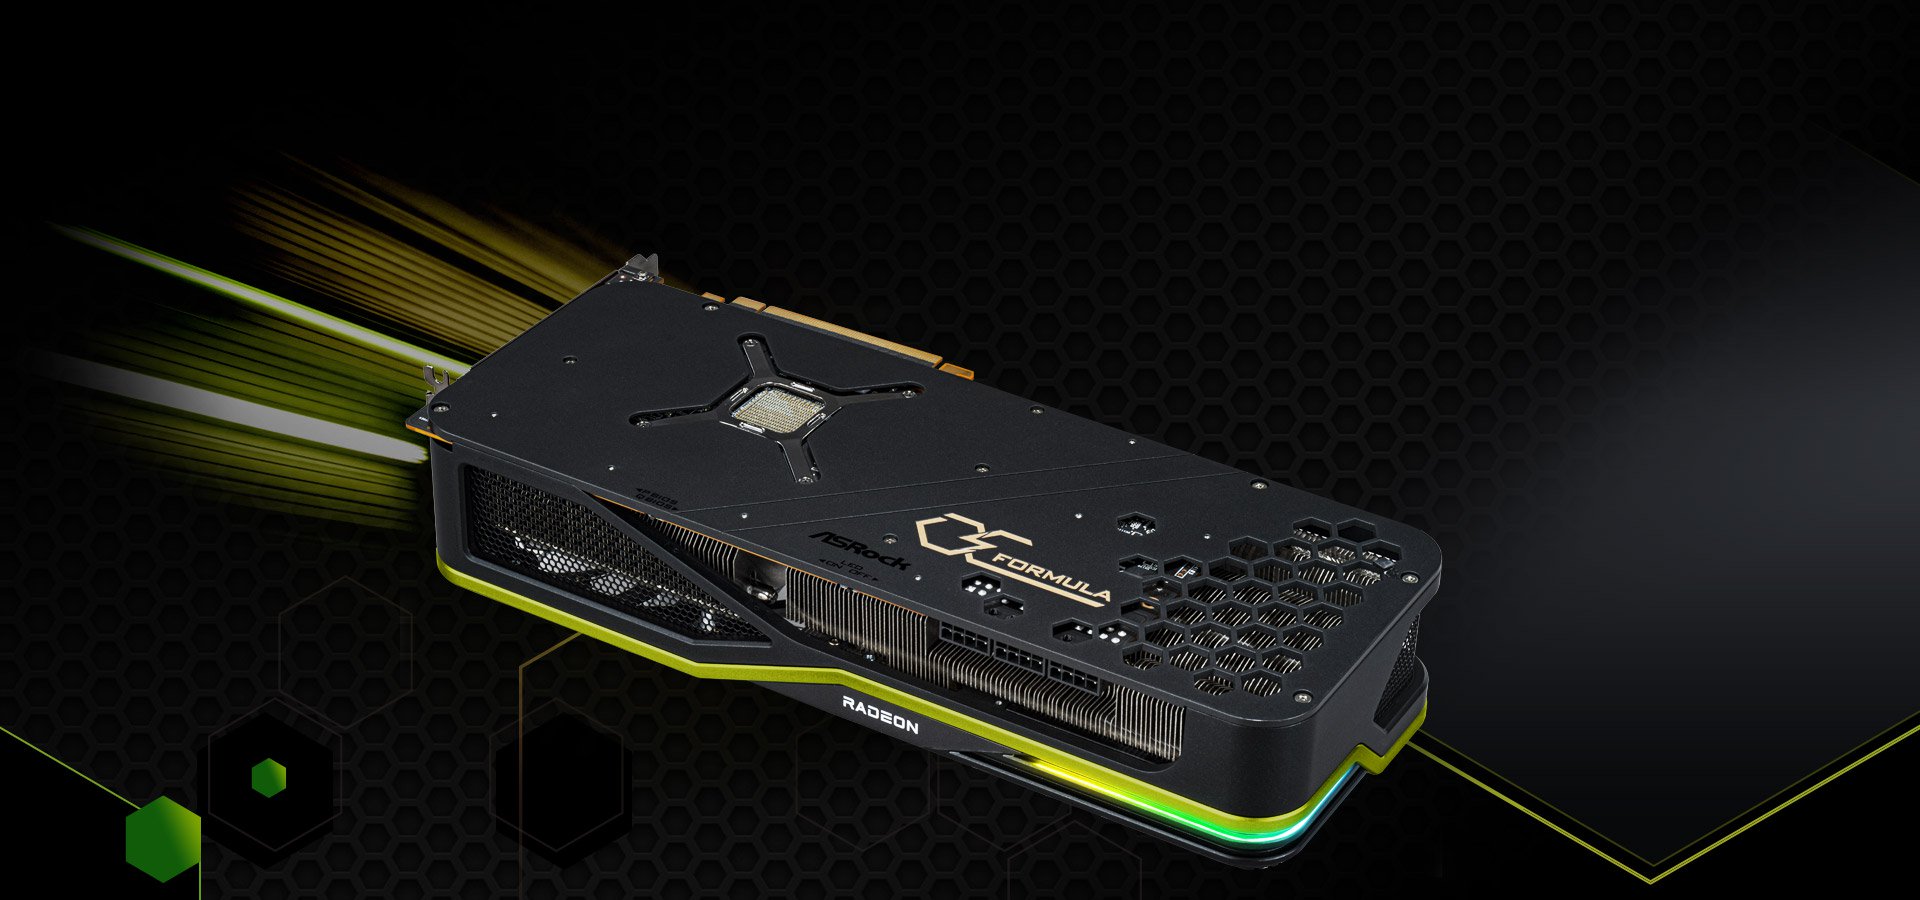 素晴らしい ストアセレクト店ASRock グラフィックボード AMD Radeon RX6950XT 搭載モデル OCF 16G 